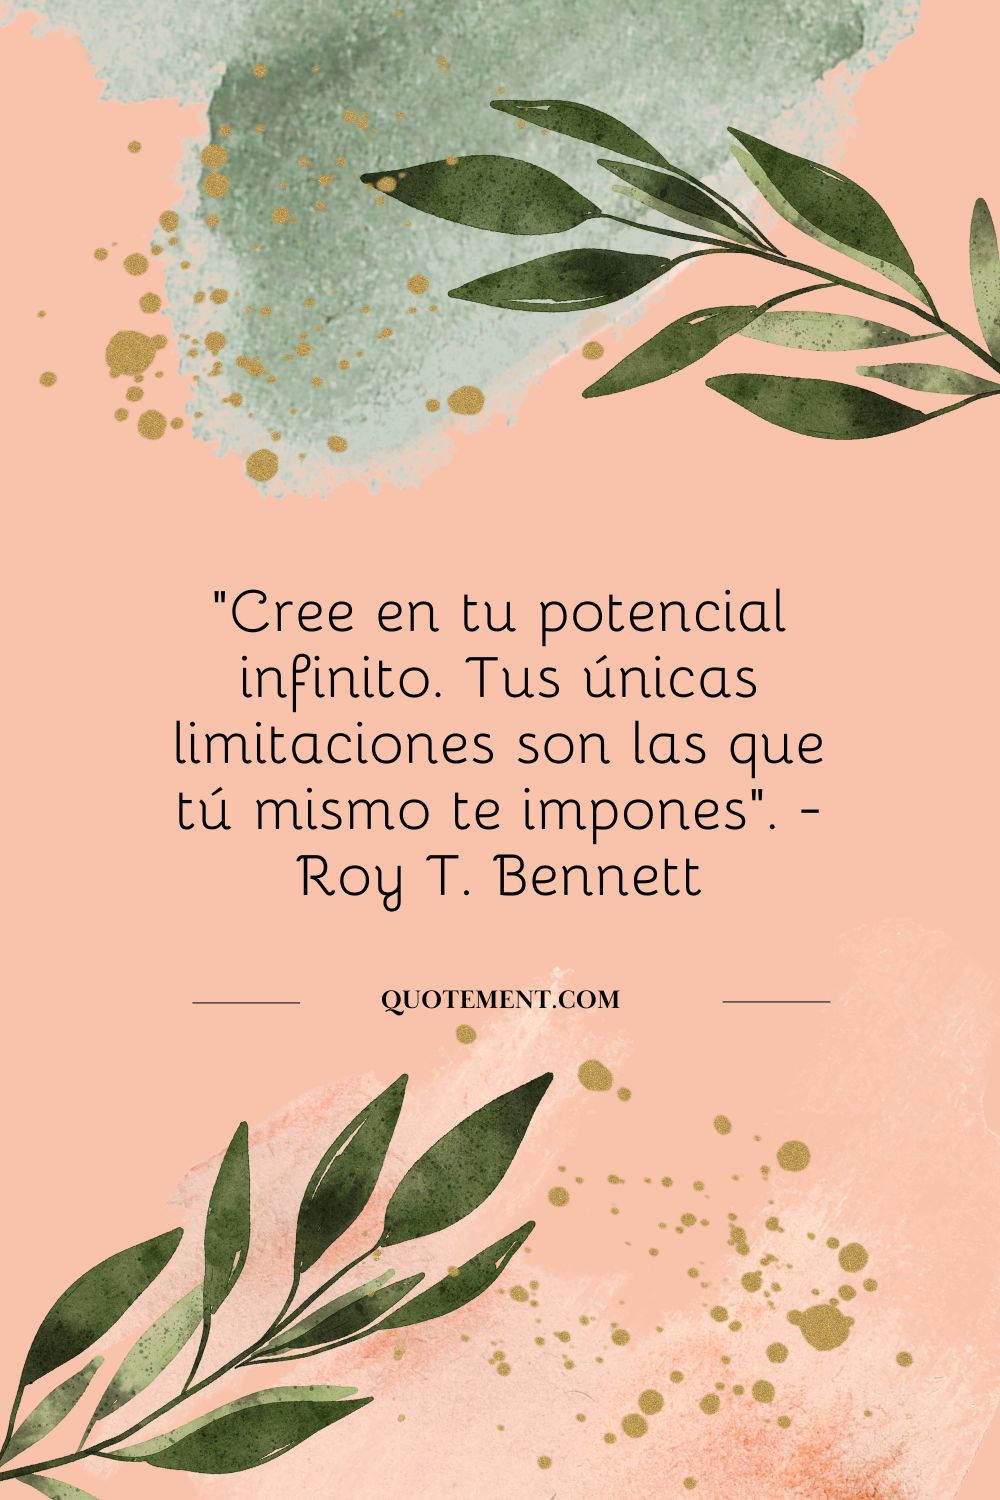 "Cree en tu potencial infinito. Tus únicas limitaciones son las que tú mismo te impones". - Roy T. Bennett